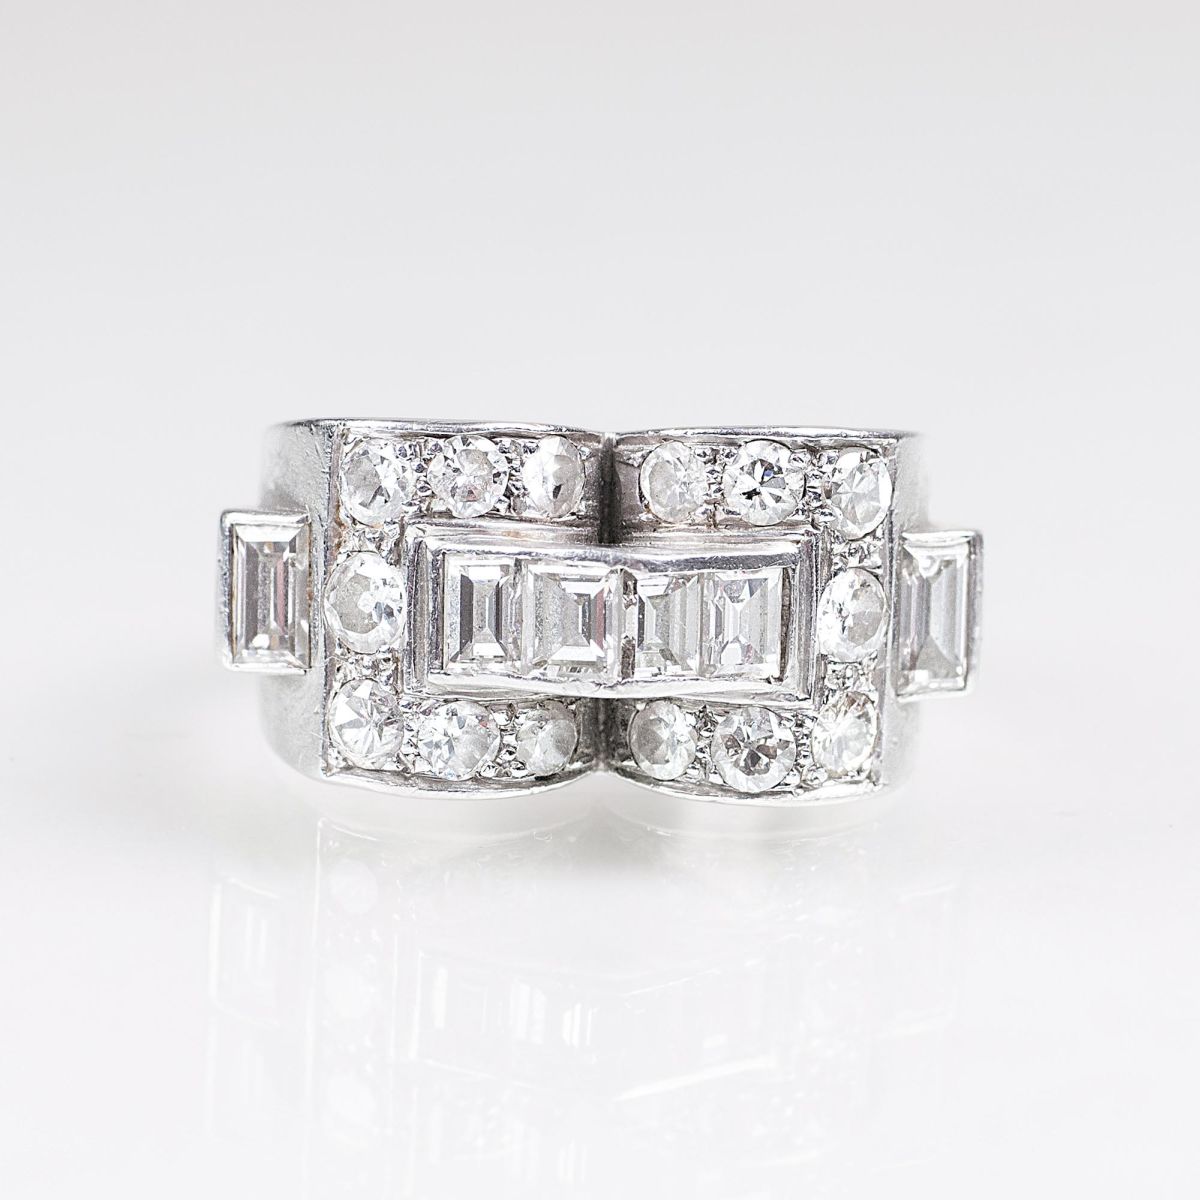 An Art-déco Diamond Ring